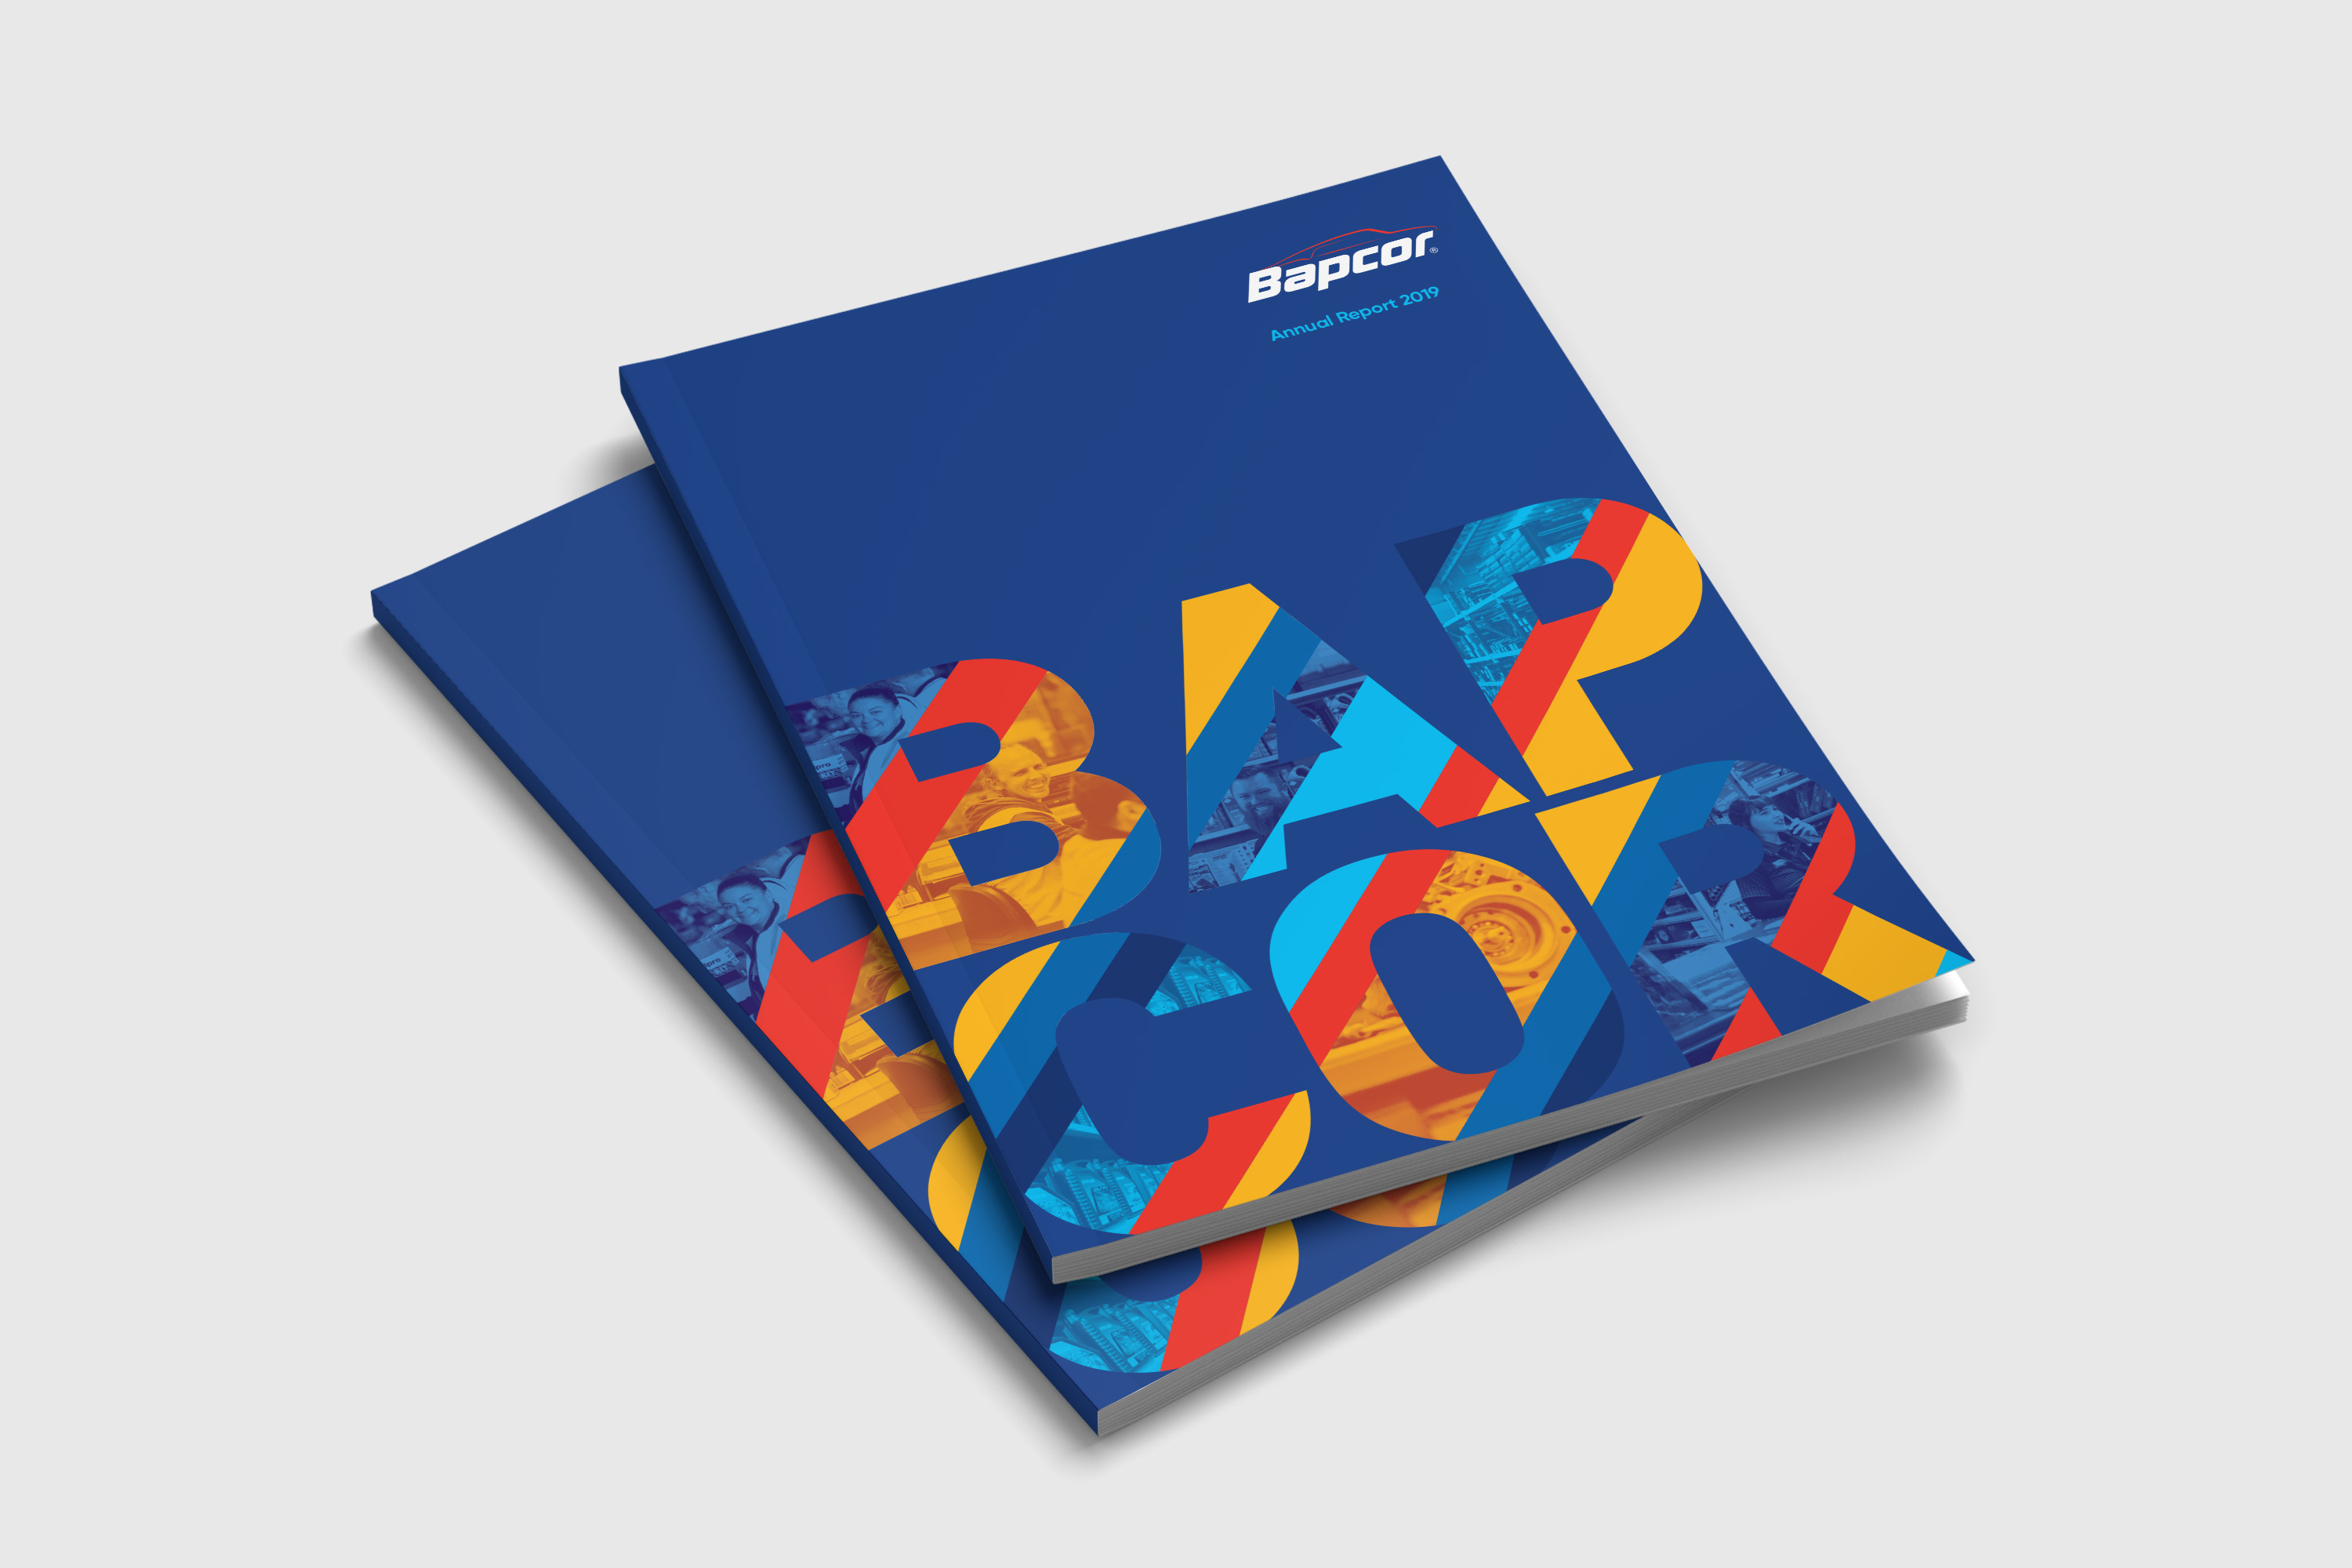 Bapcor Annual Report cover design 2019